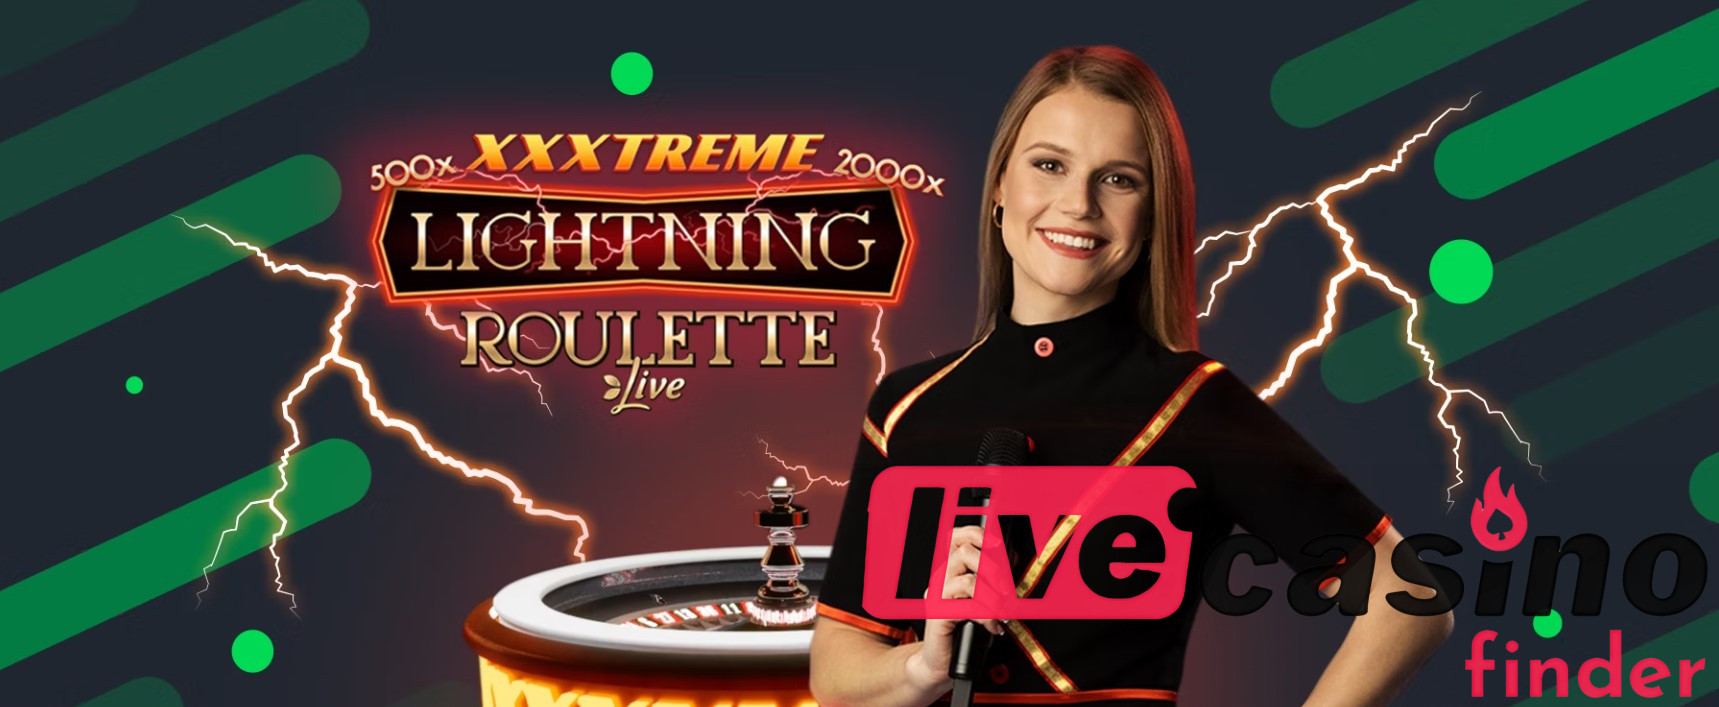 Dostawcy oprogramowania dla XXXtreme Lightning Roulette.